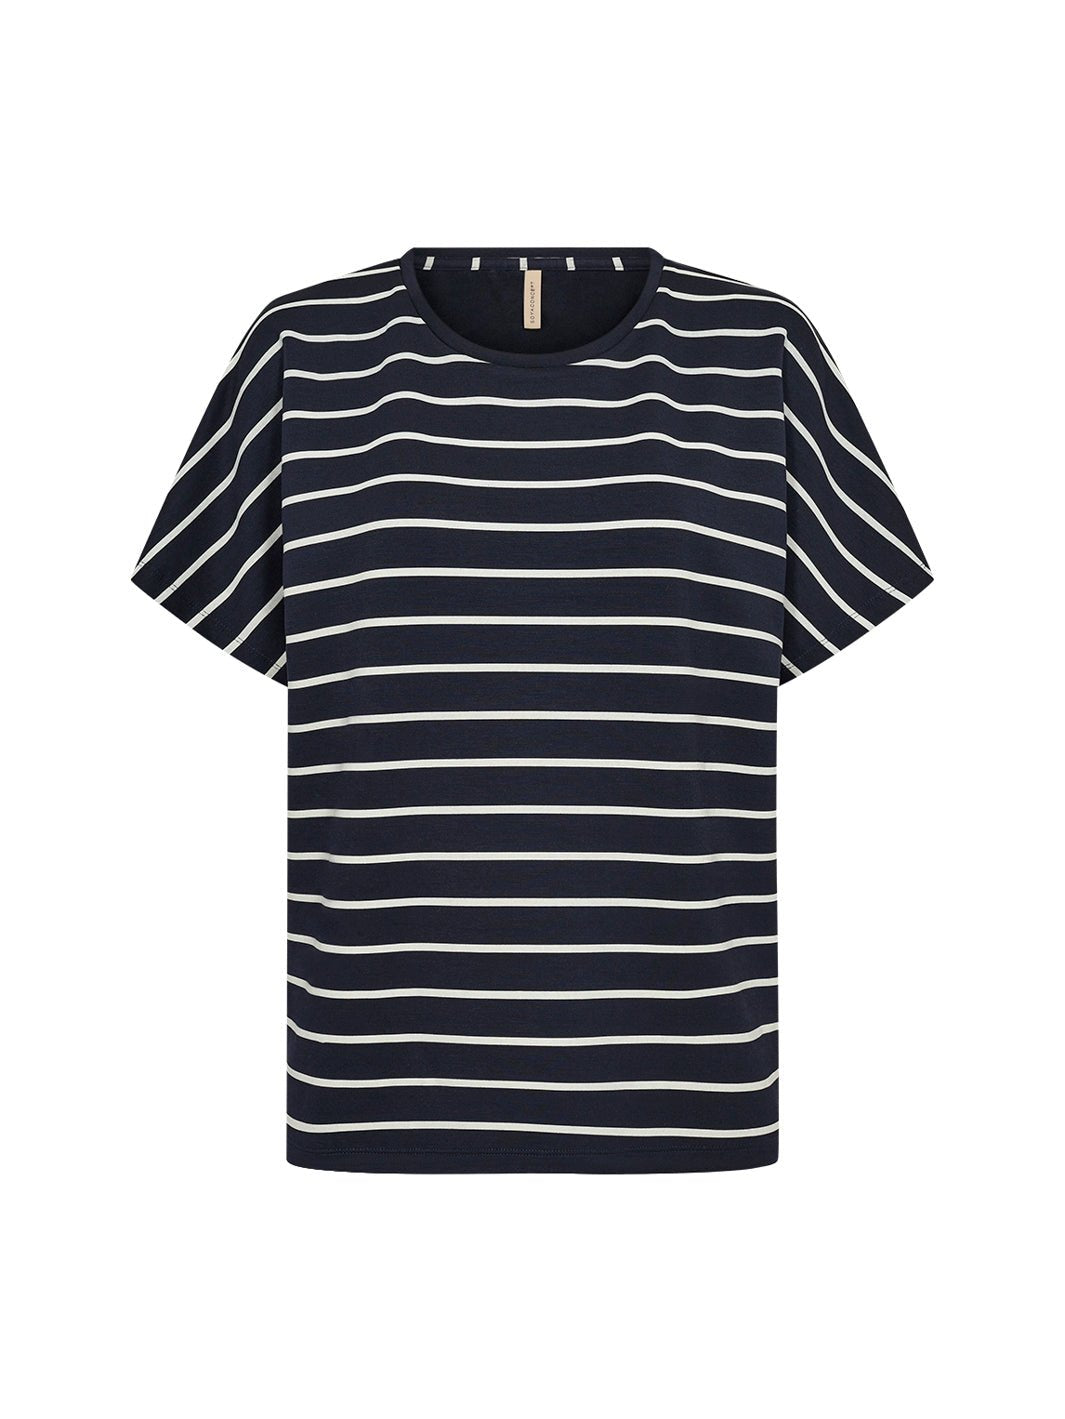 Soya Concept Barni 22 t-shirt navy - Online-Mode